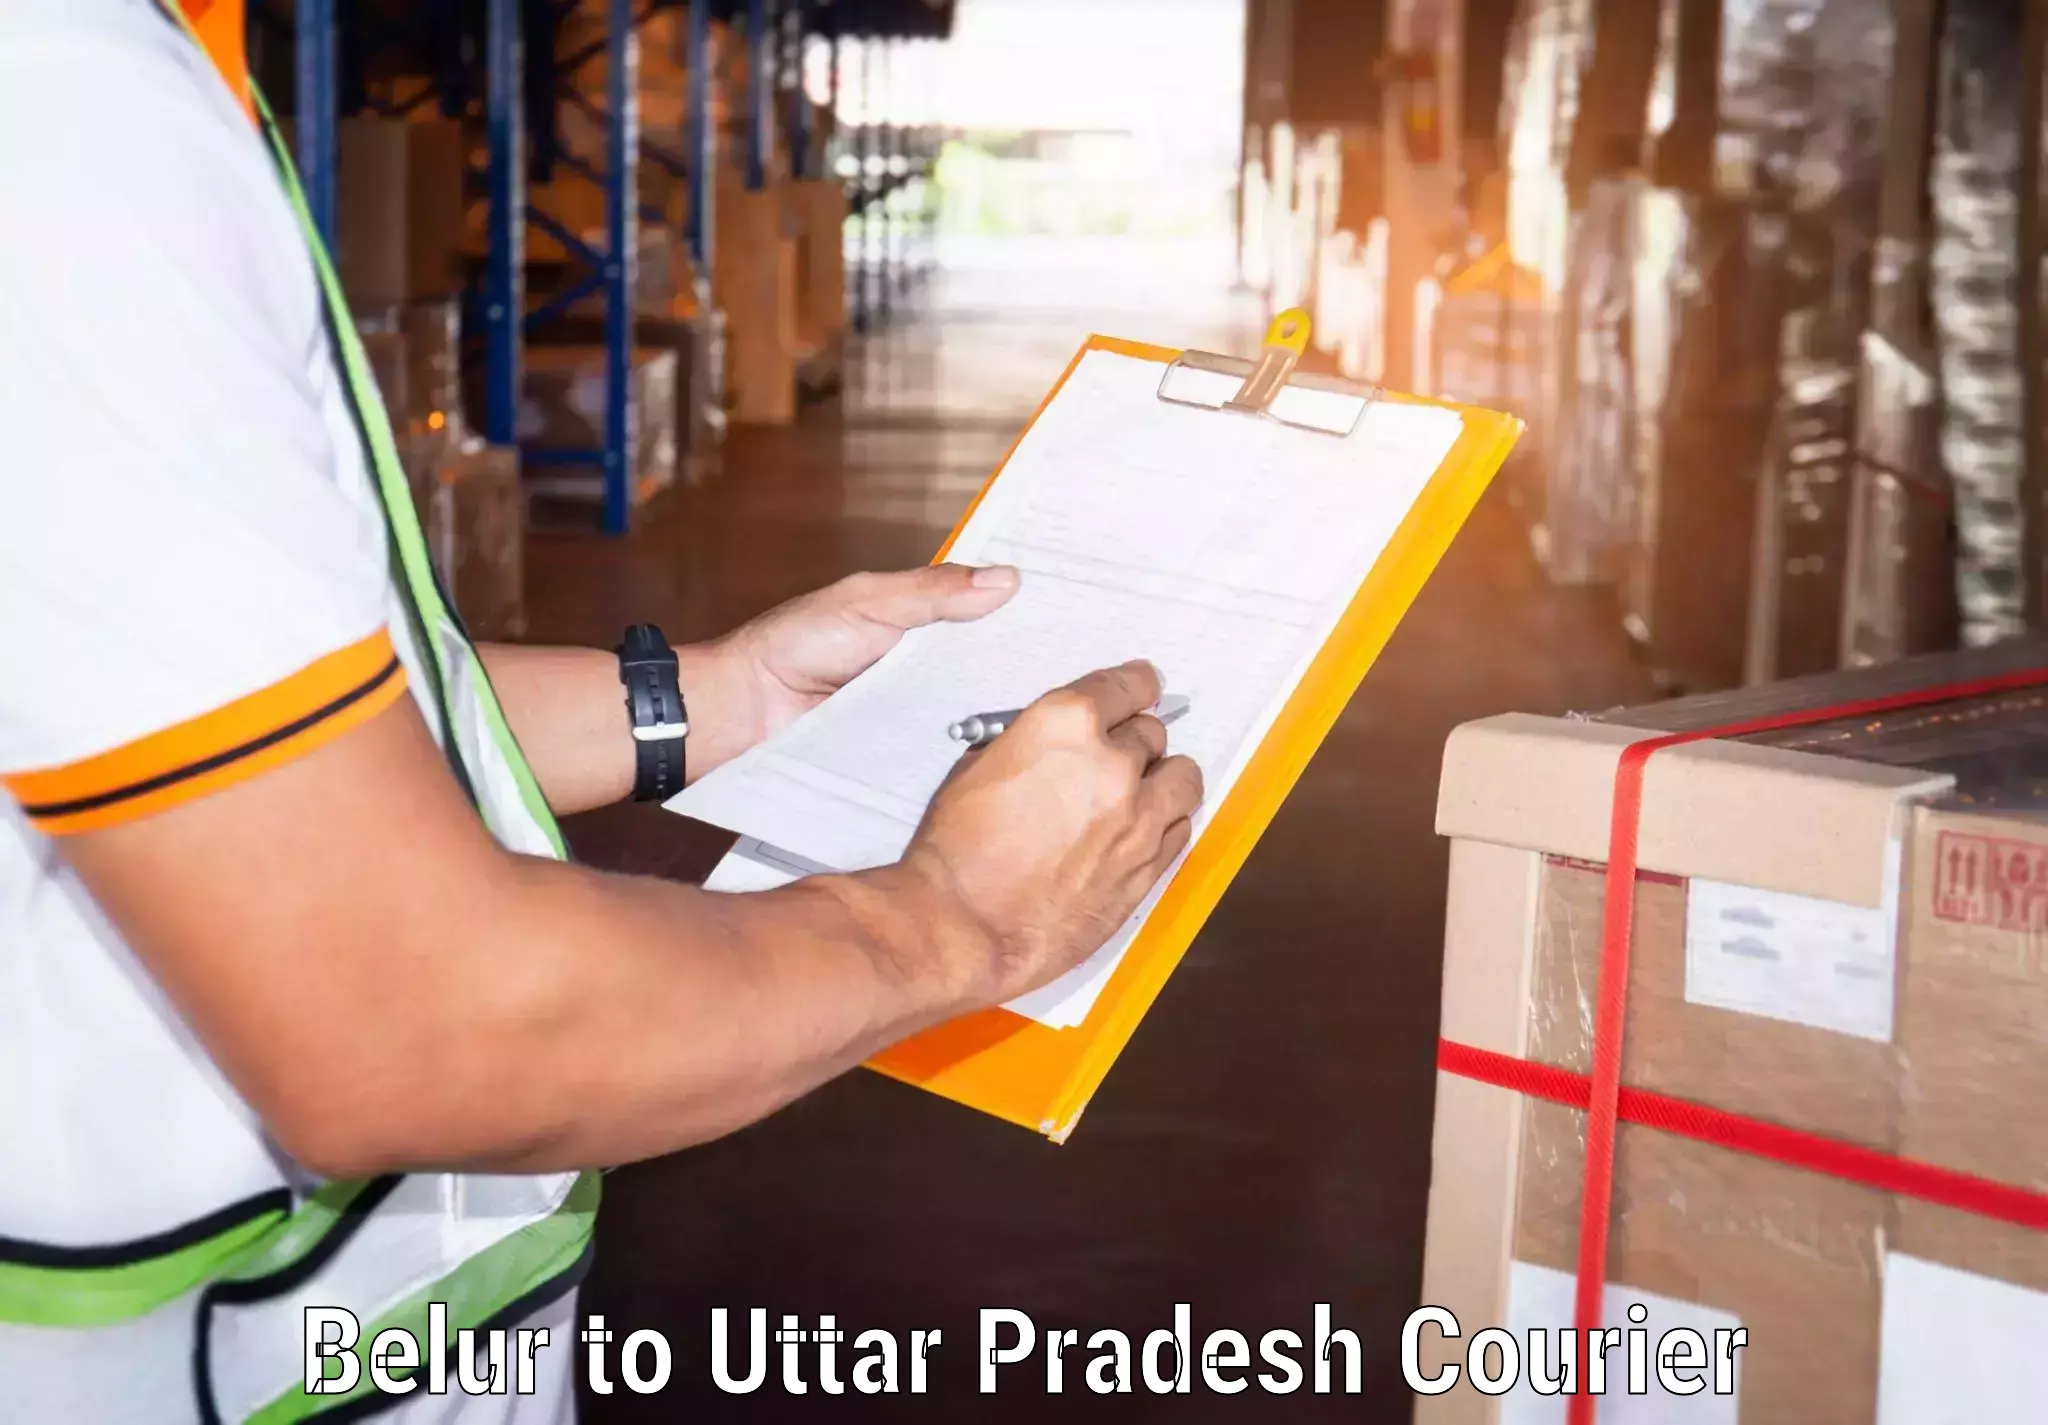 Professional courier handling Belur to Sant Ravidas Nagar